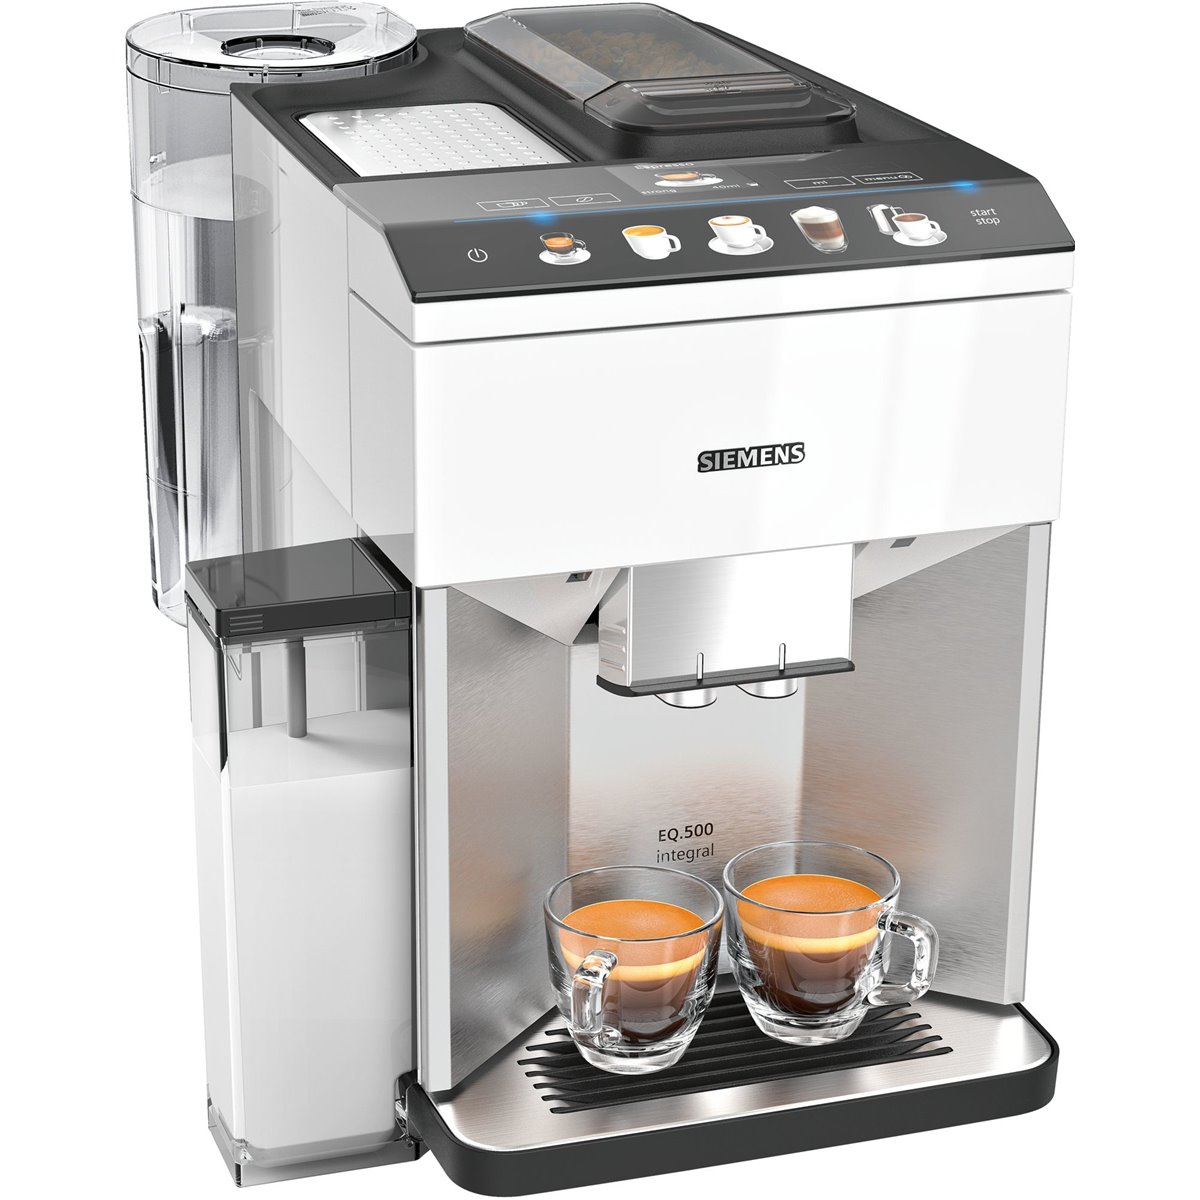 Siemens EQ.500 TQ507R02 - Espresso machine - 1.7 L - Coffee beans - Built-in grinder - 1500 W - Stainless steel,White